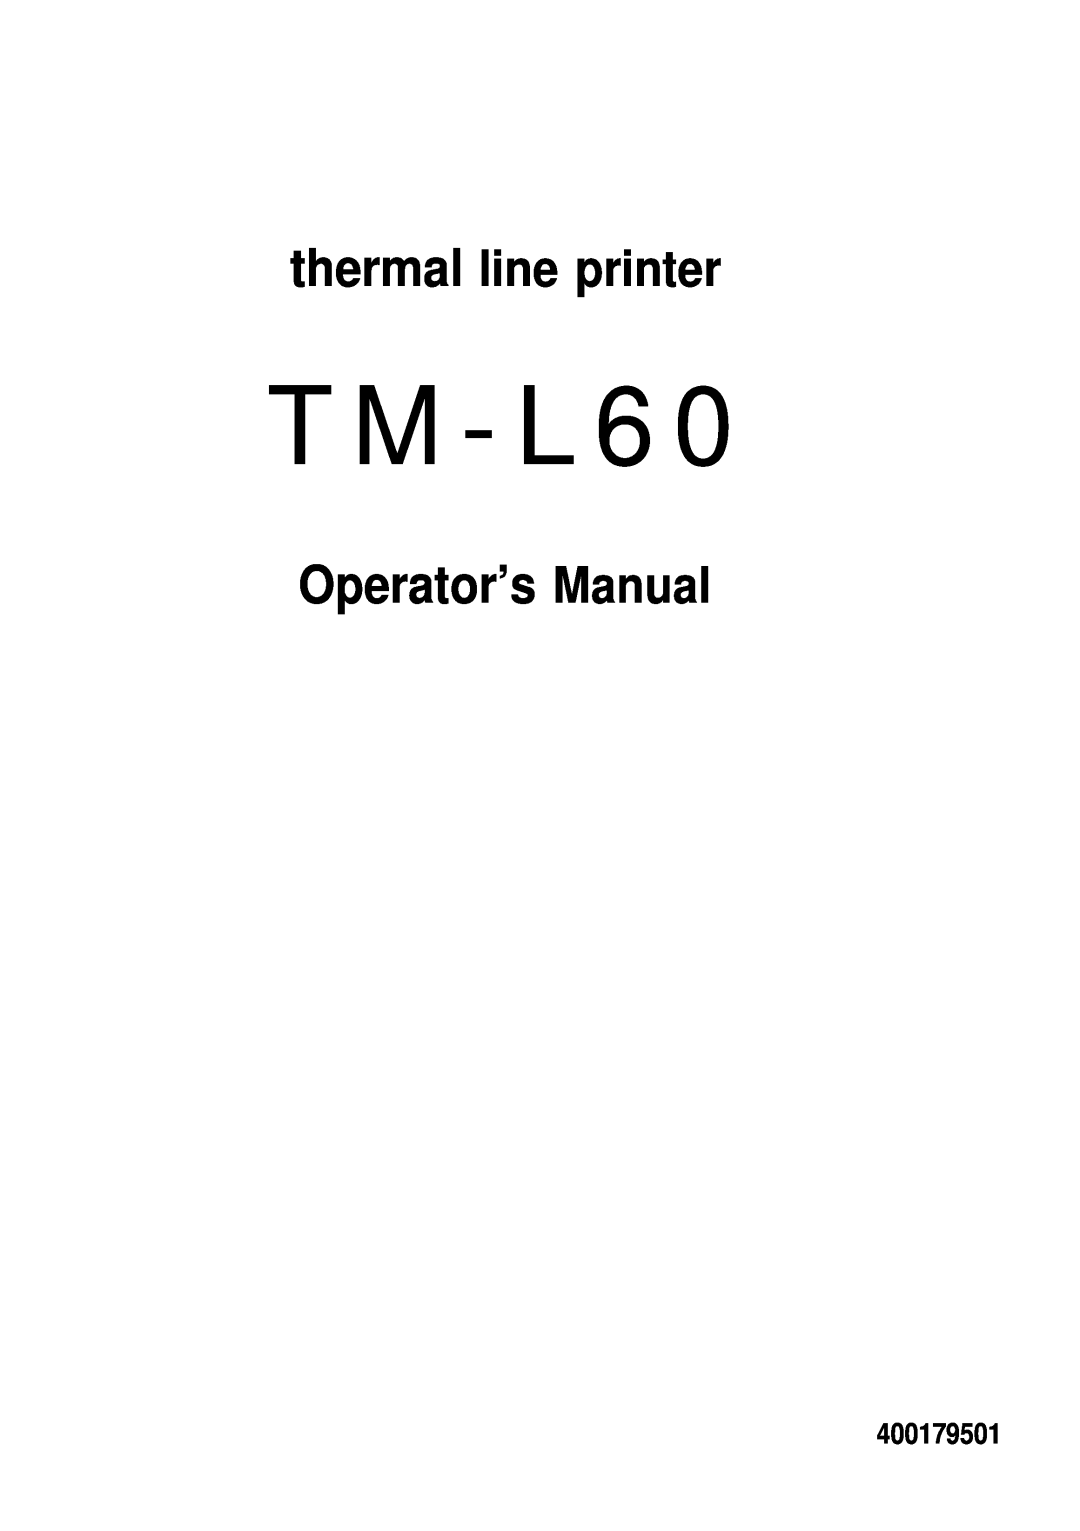 Seiko Group TM-L60 manual Operator’s Manual, thermal line printer, T M - L 6, 400179501 